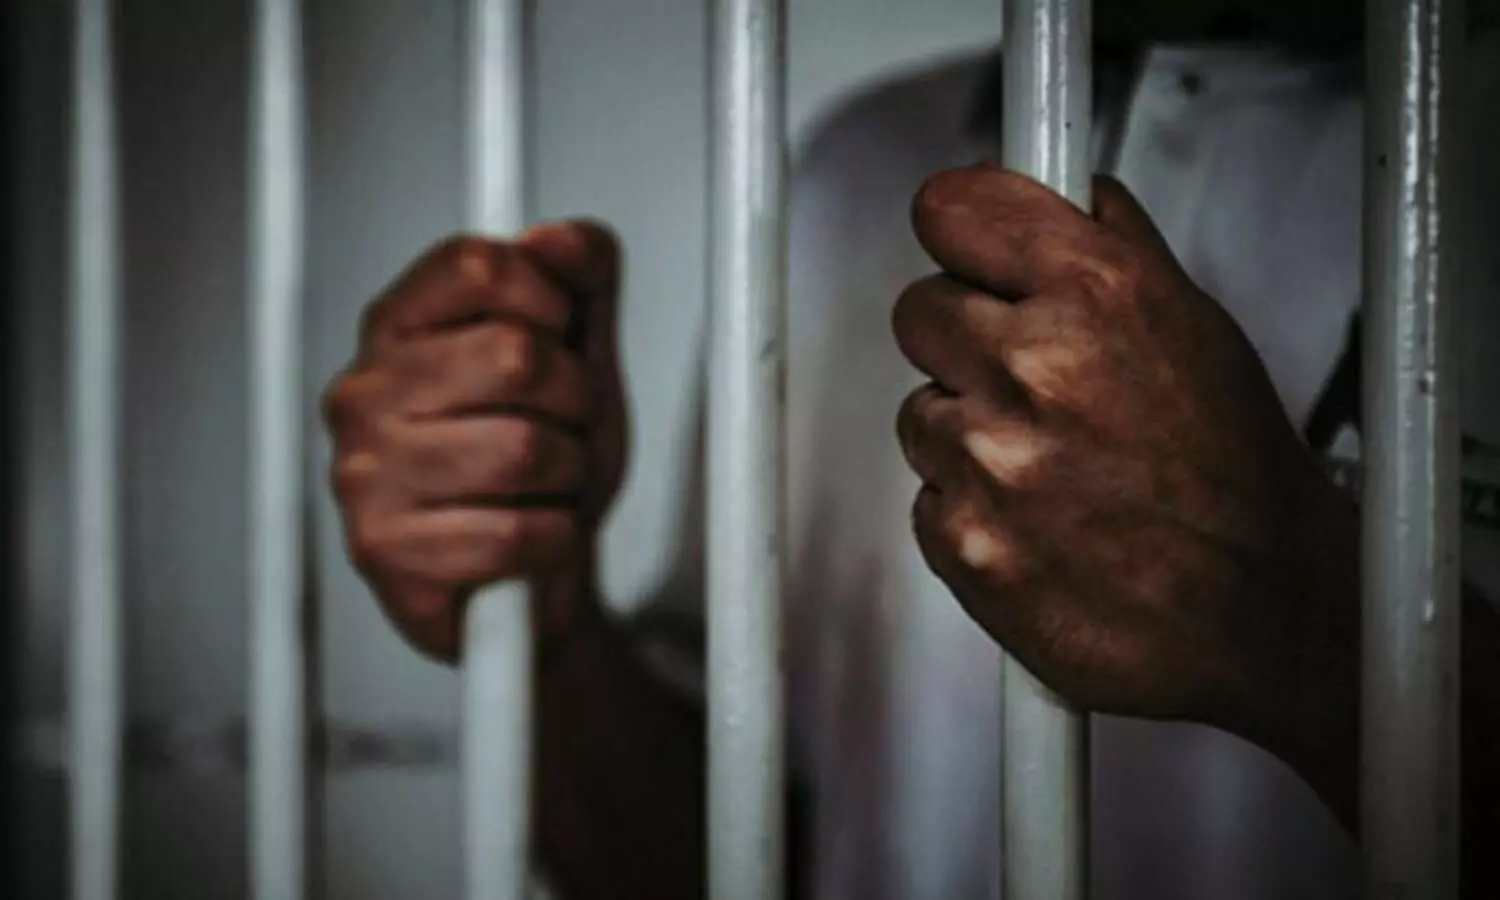 BIG BREAKING: सूरज रेवन्ना को कोर्ट ने 14 दिन की न्यायिक हिरासत में जेल भेजा